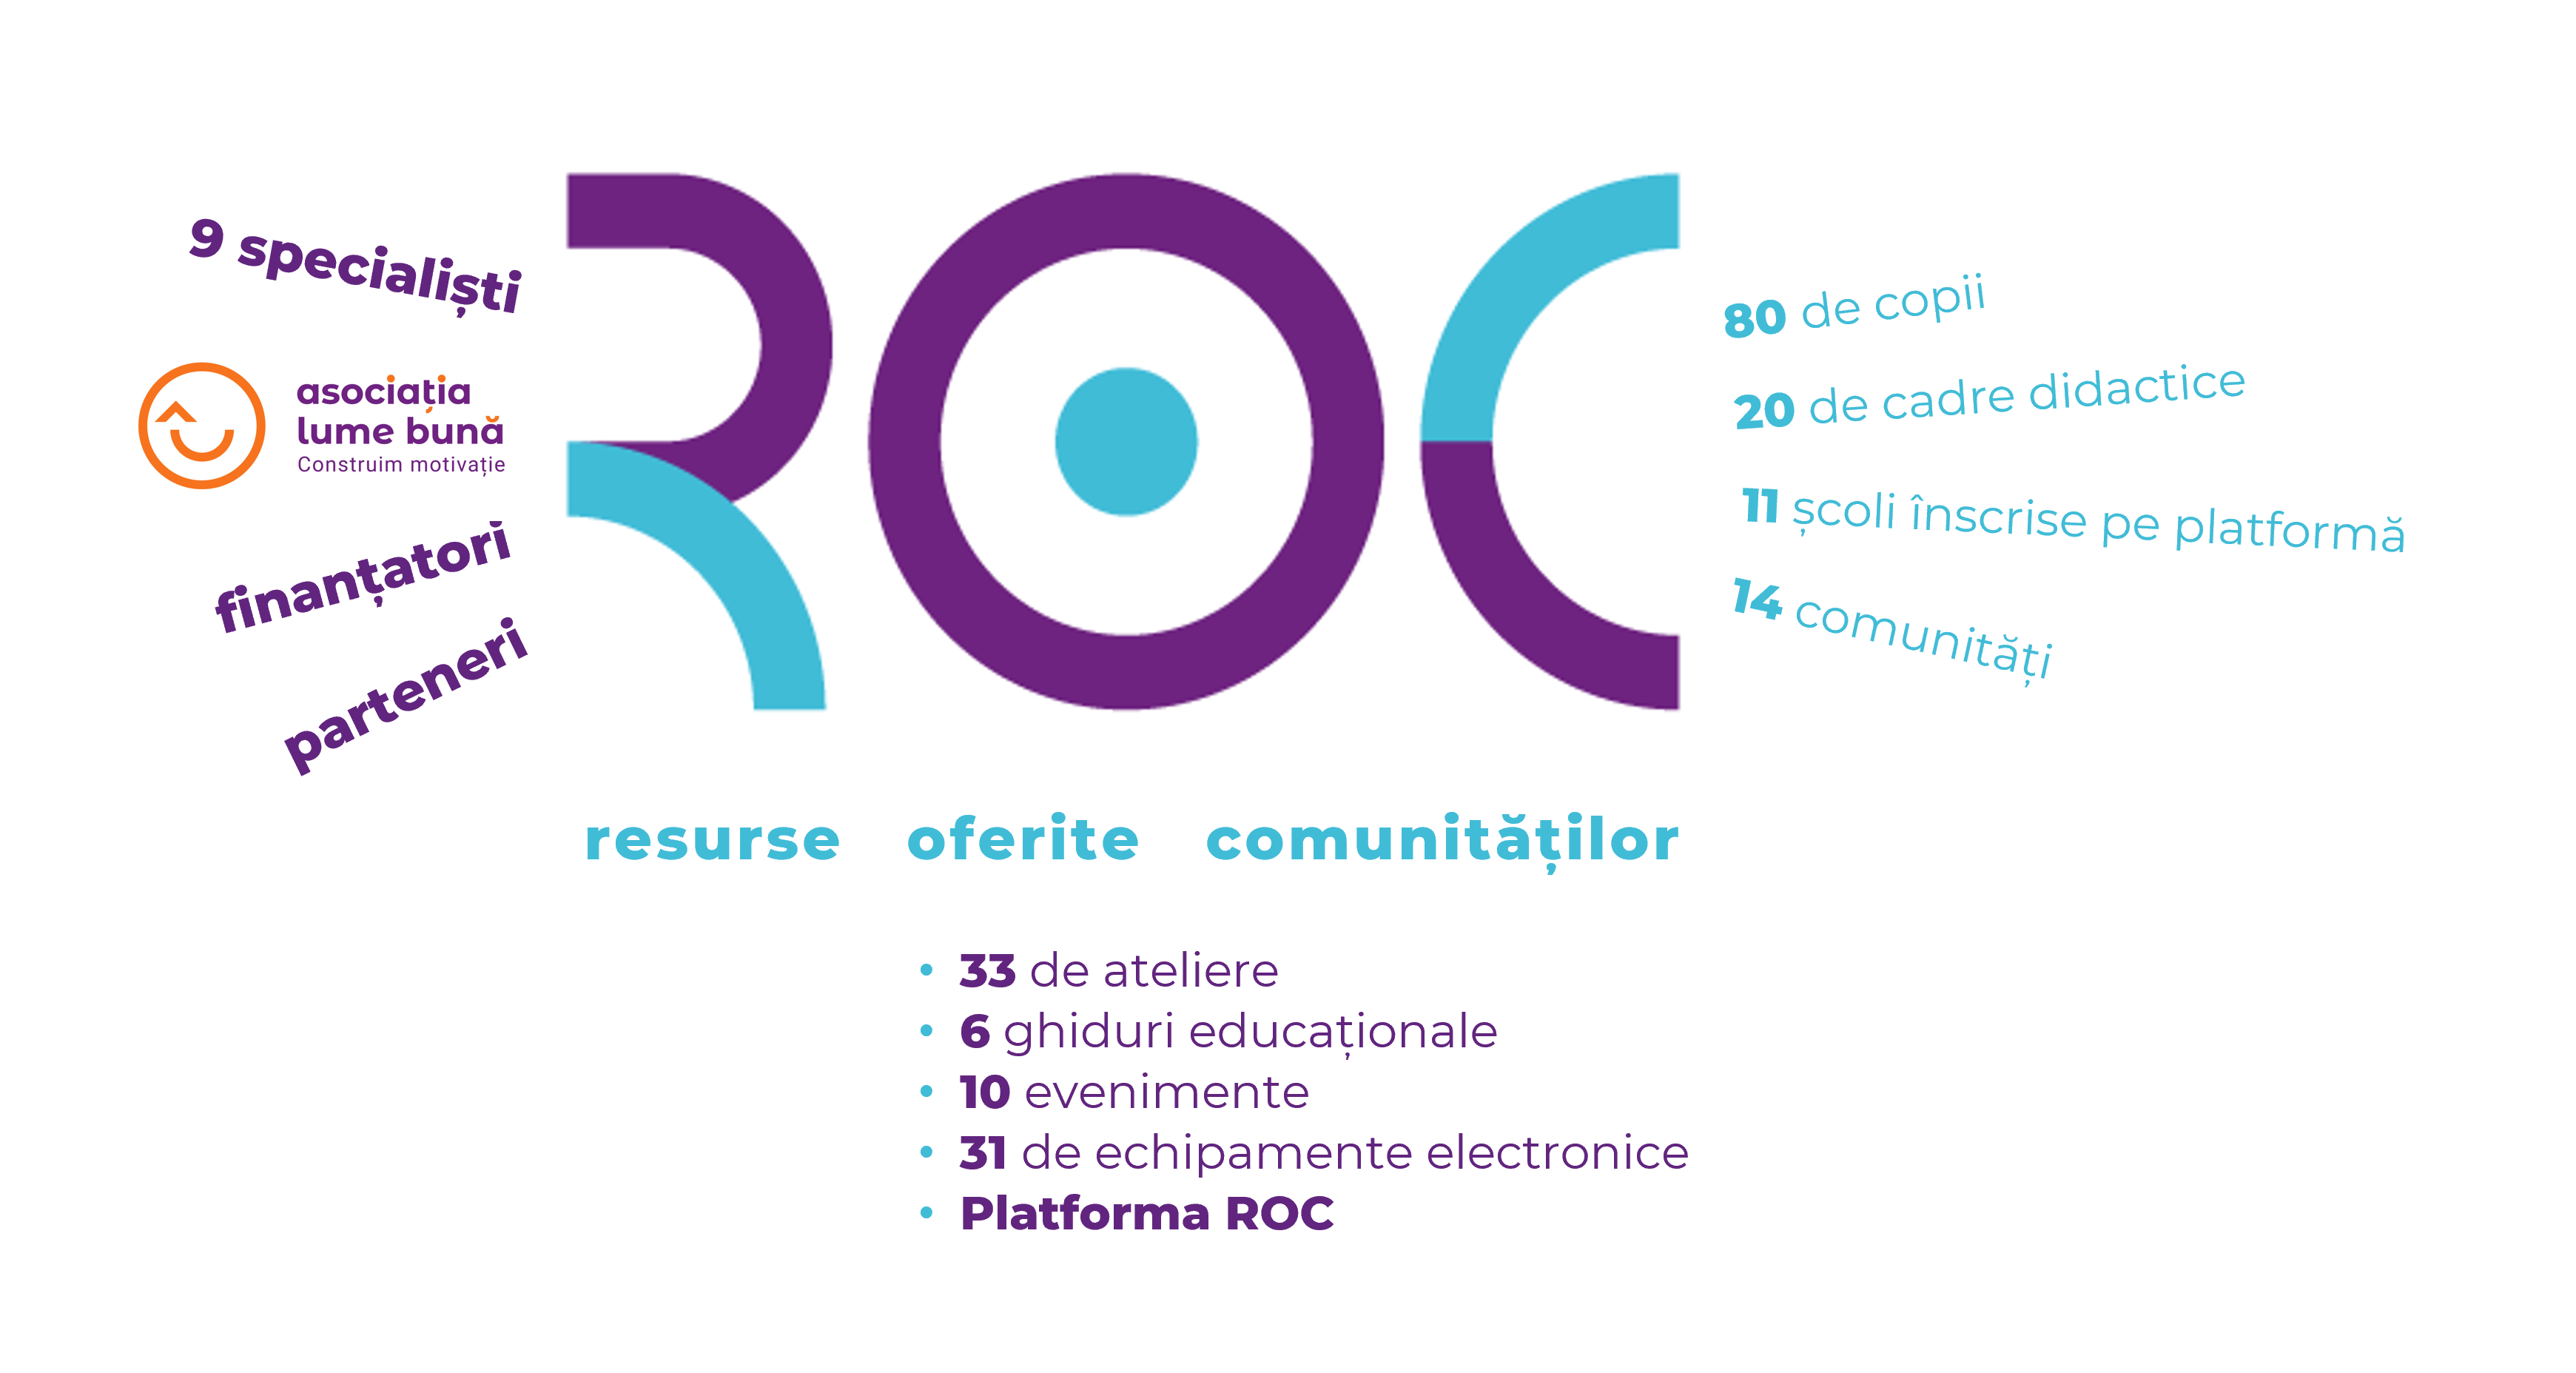 Resurse oferite comunităților sau ROC